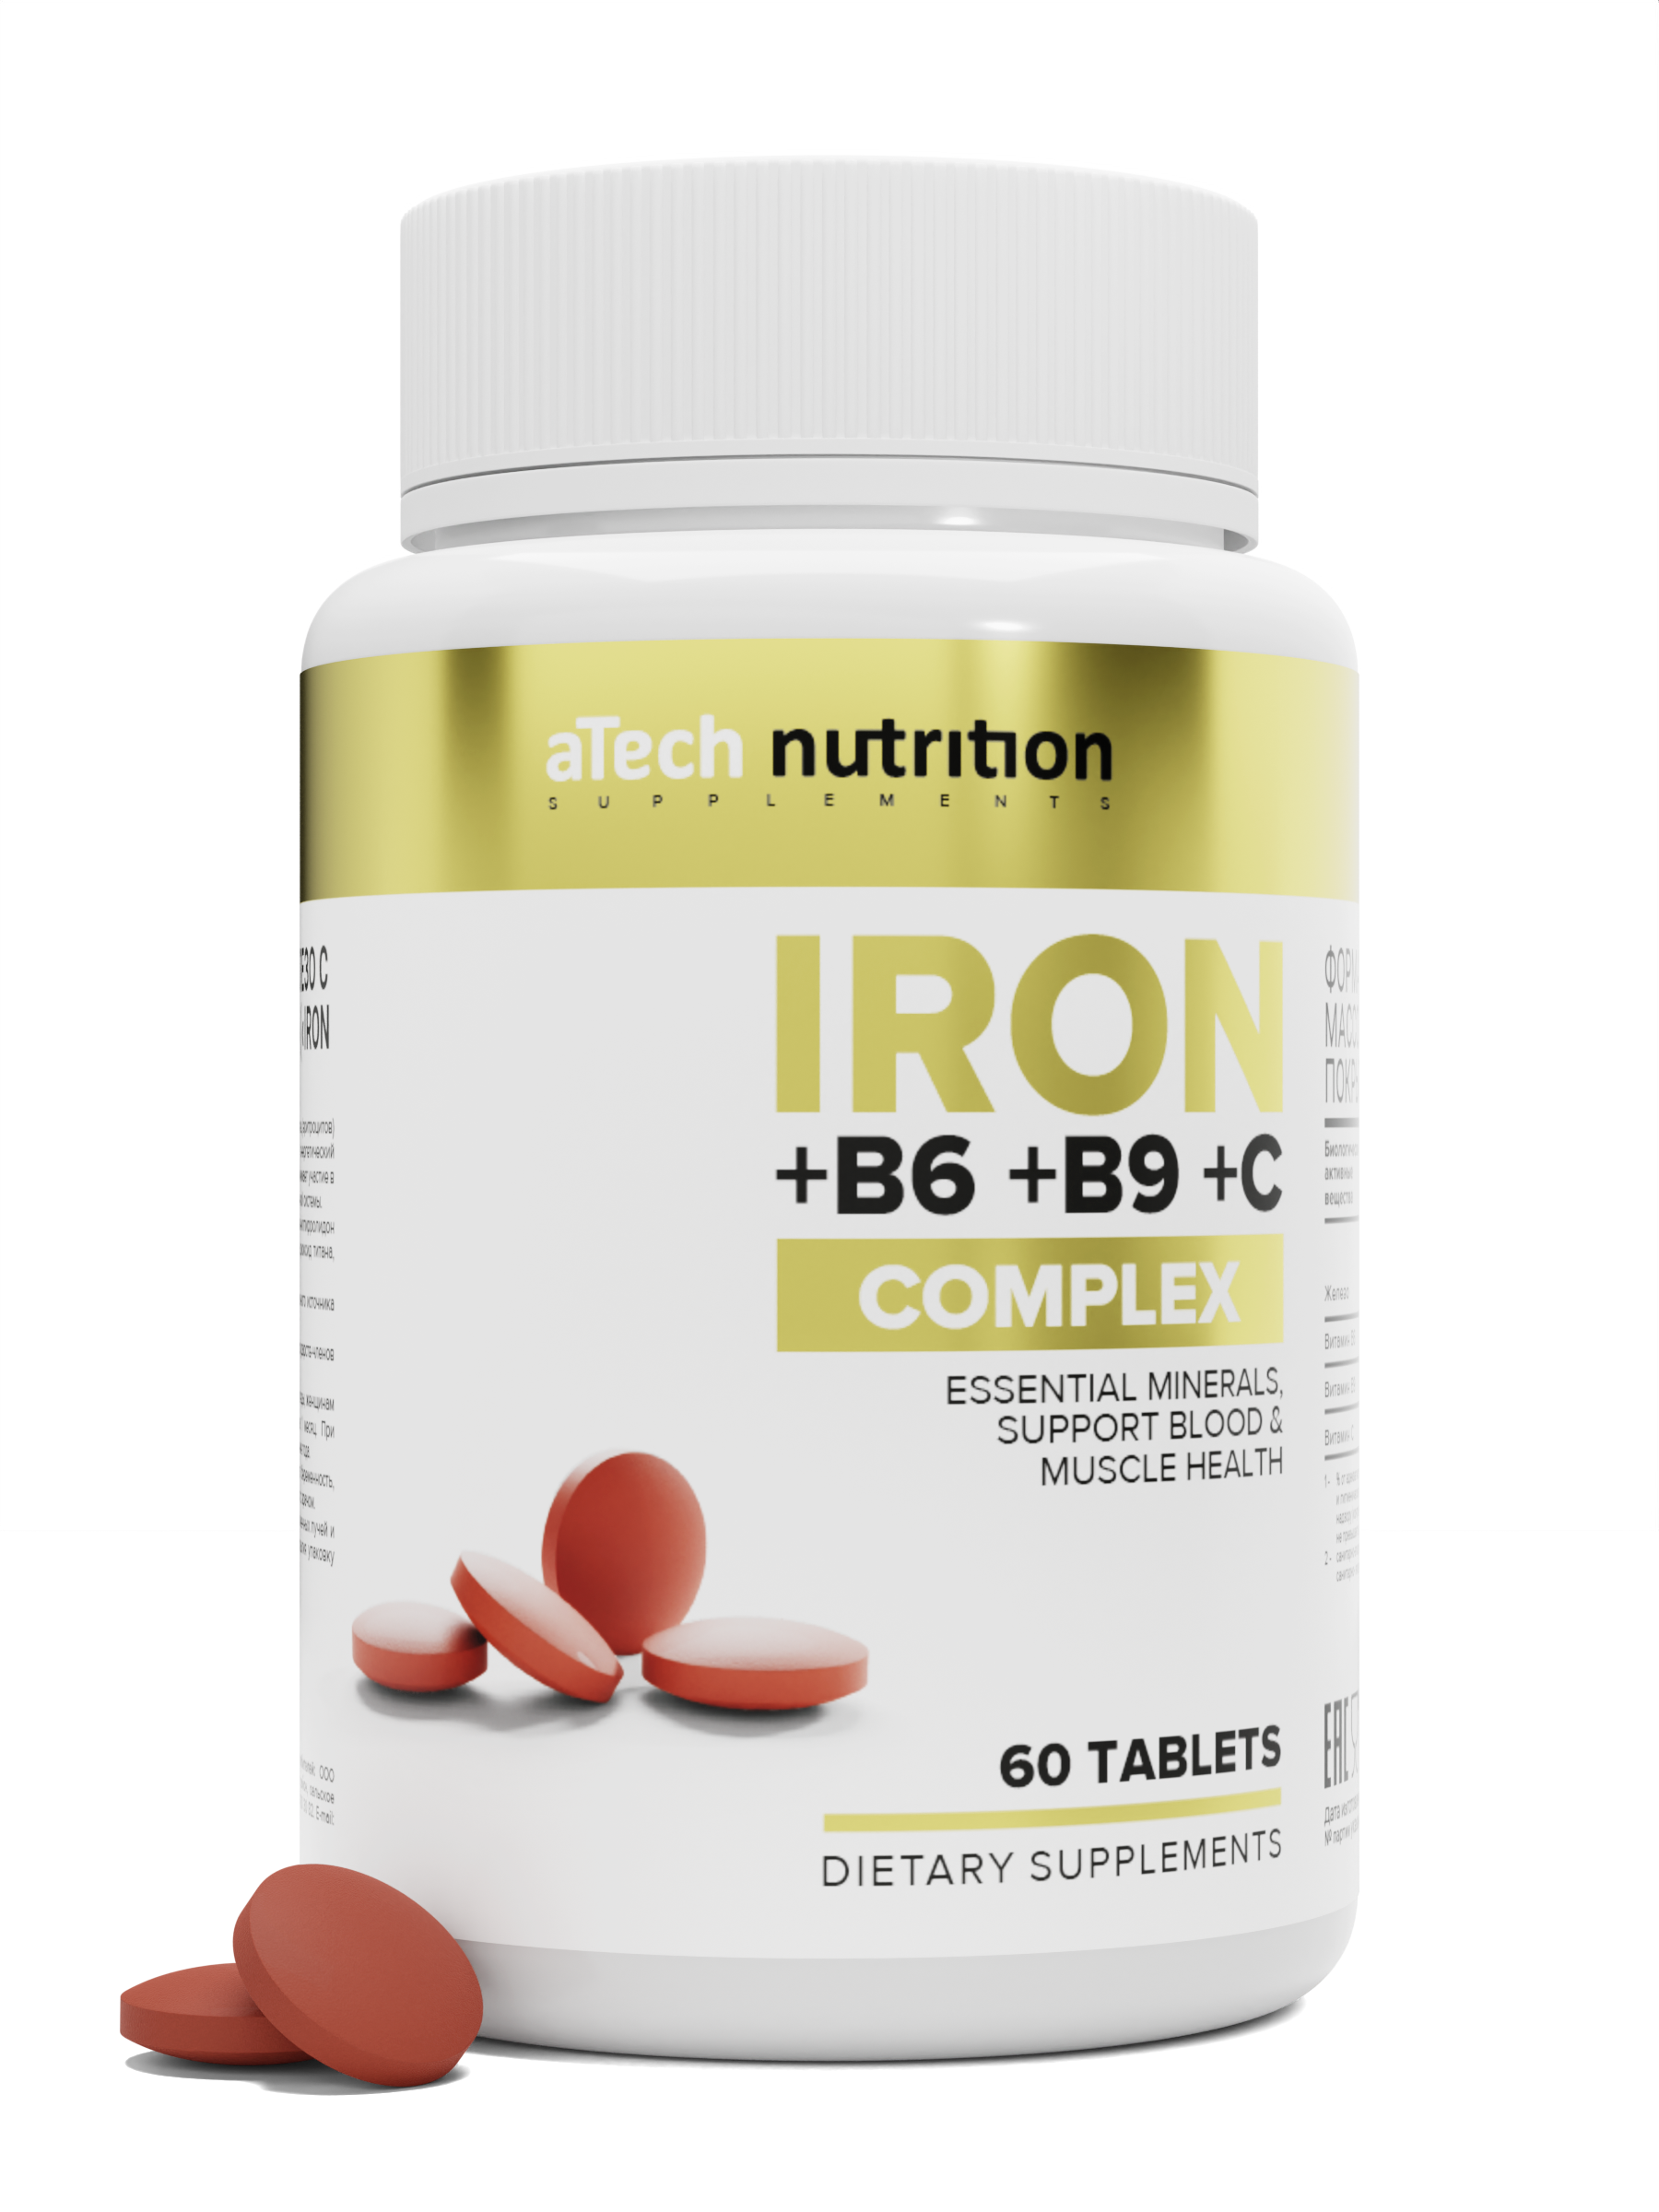 Купить Комплекс железо + витамины, Железо + Витамины aTech nutrition IRON+B6+B9+C 60 таблеток